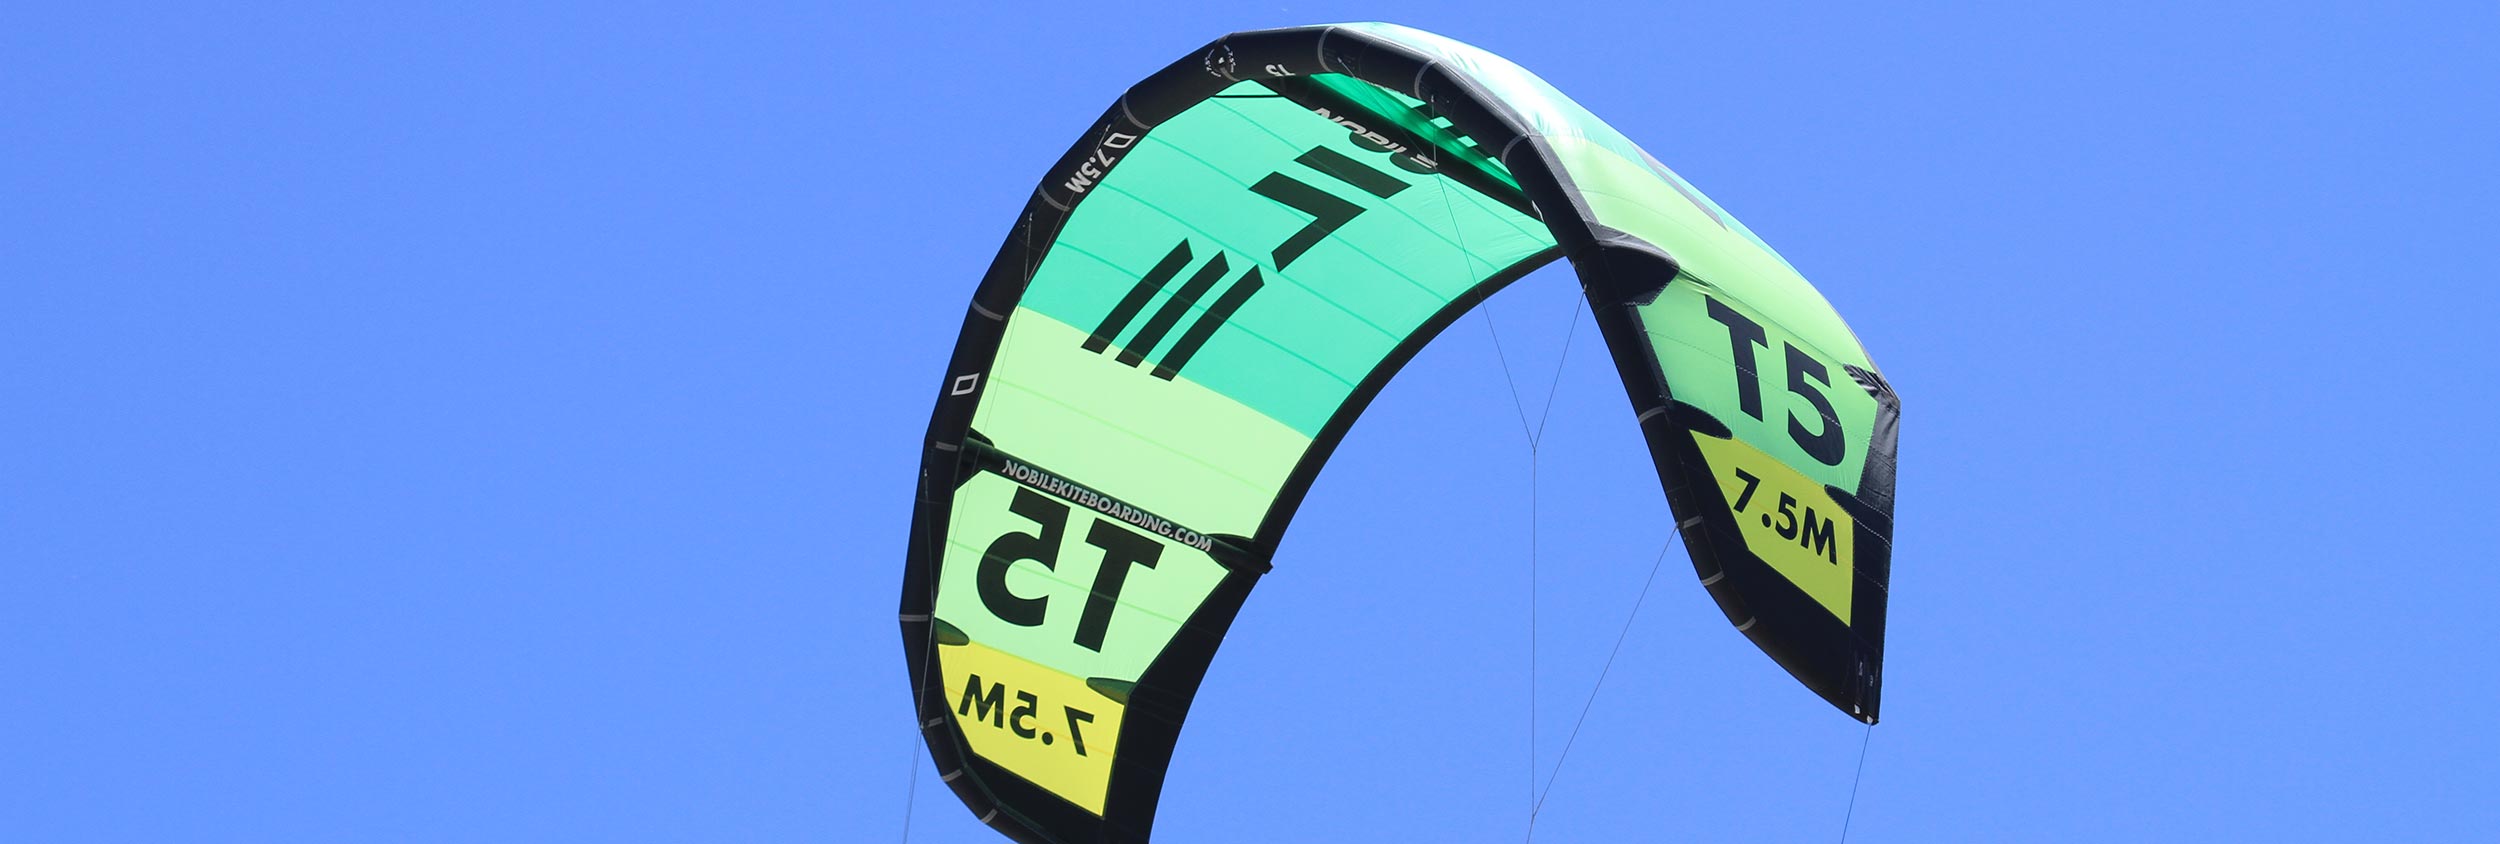 Nobile T5 kitesurfing reviews kiteworld magazine